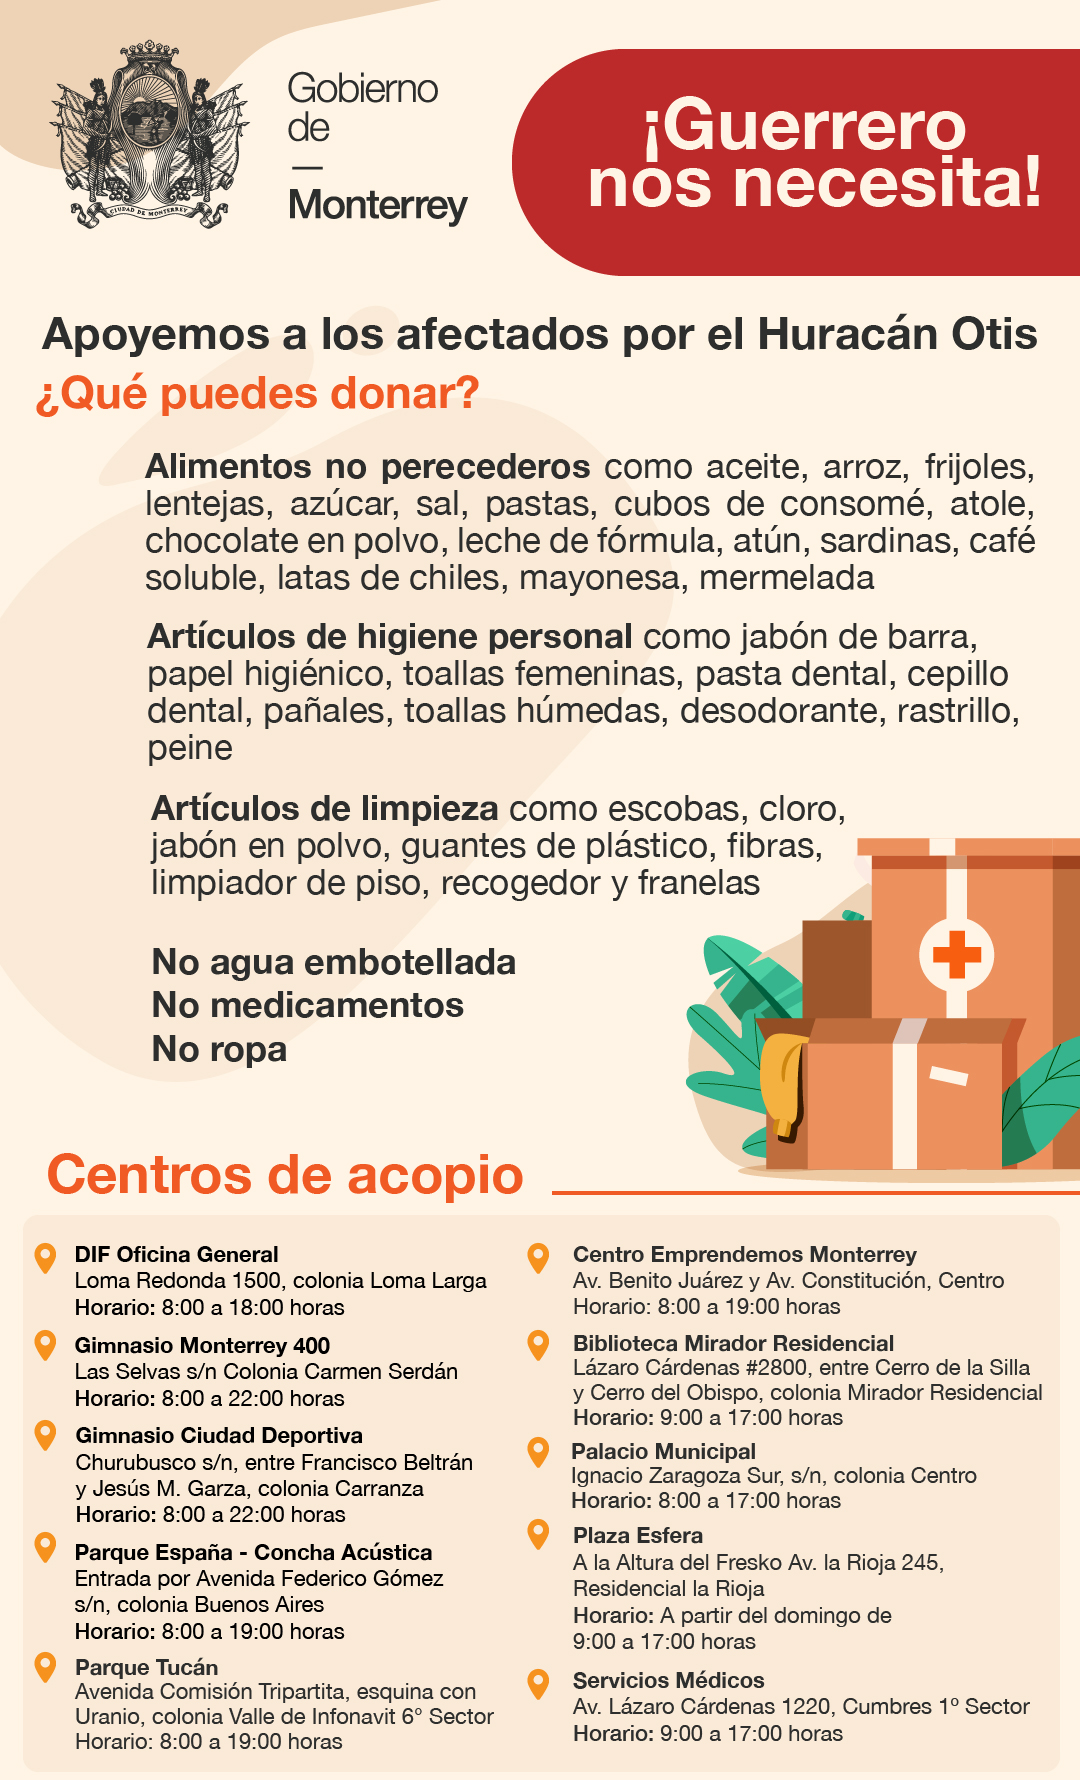 Apoyará Monterrey con asistencia de la ciudadanía a afectados por huracán en Guerrero